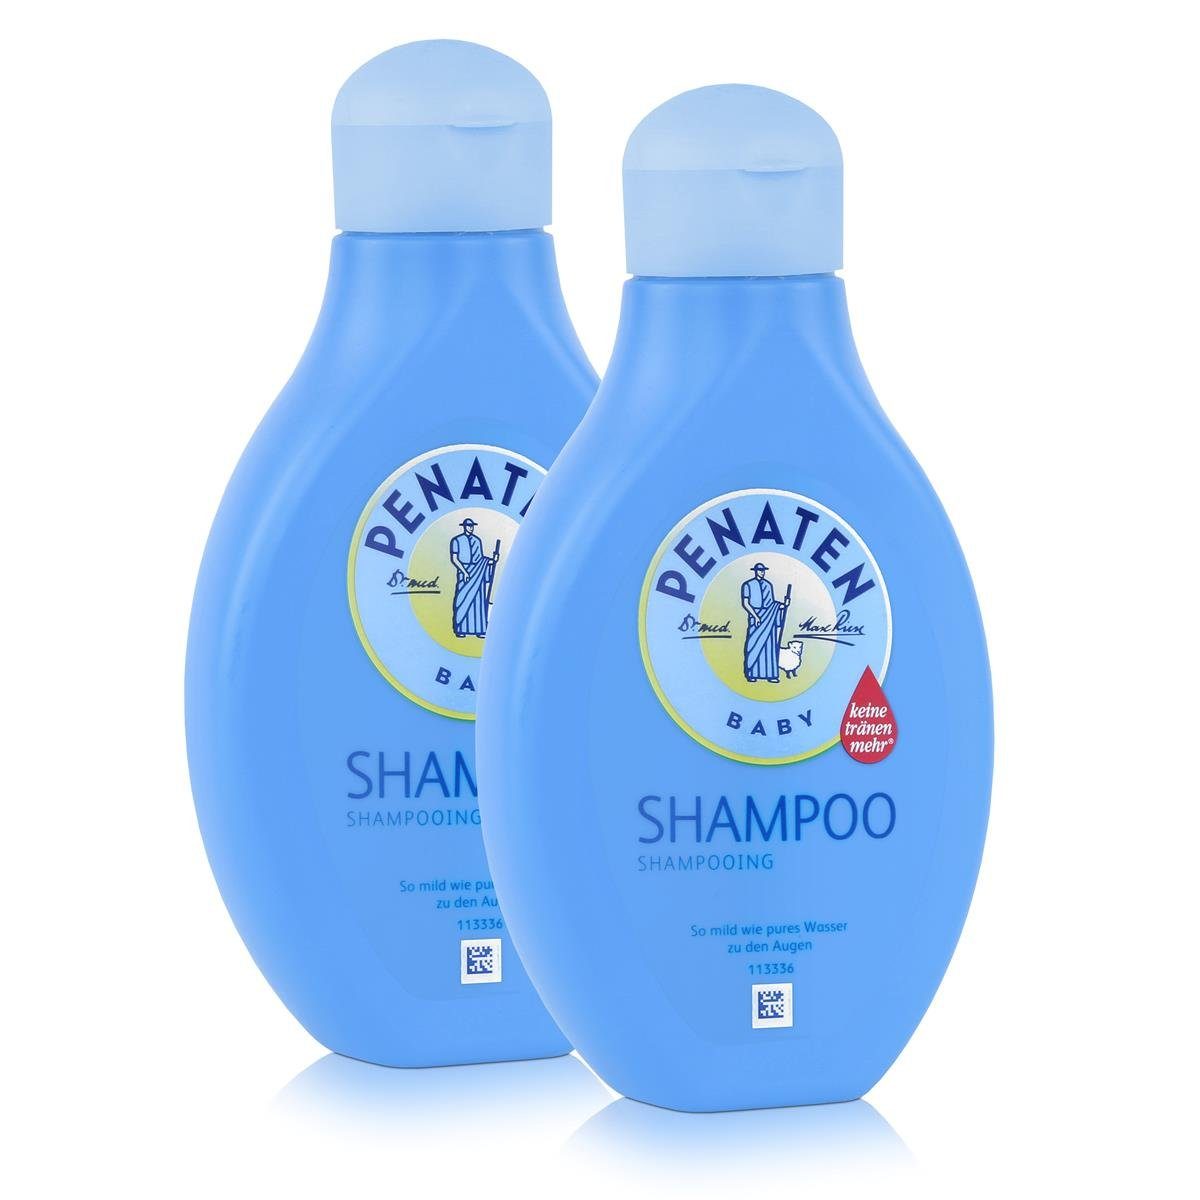 PENATEN Babypflege-Set Penaten Baby Shampoo 400ml - So mild wie pures Wasser (2er Pack)